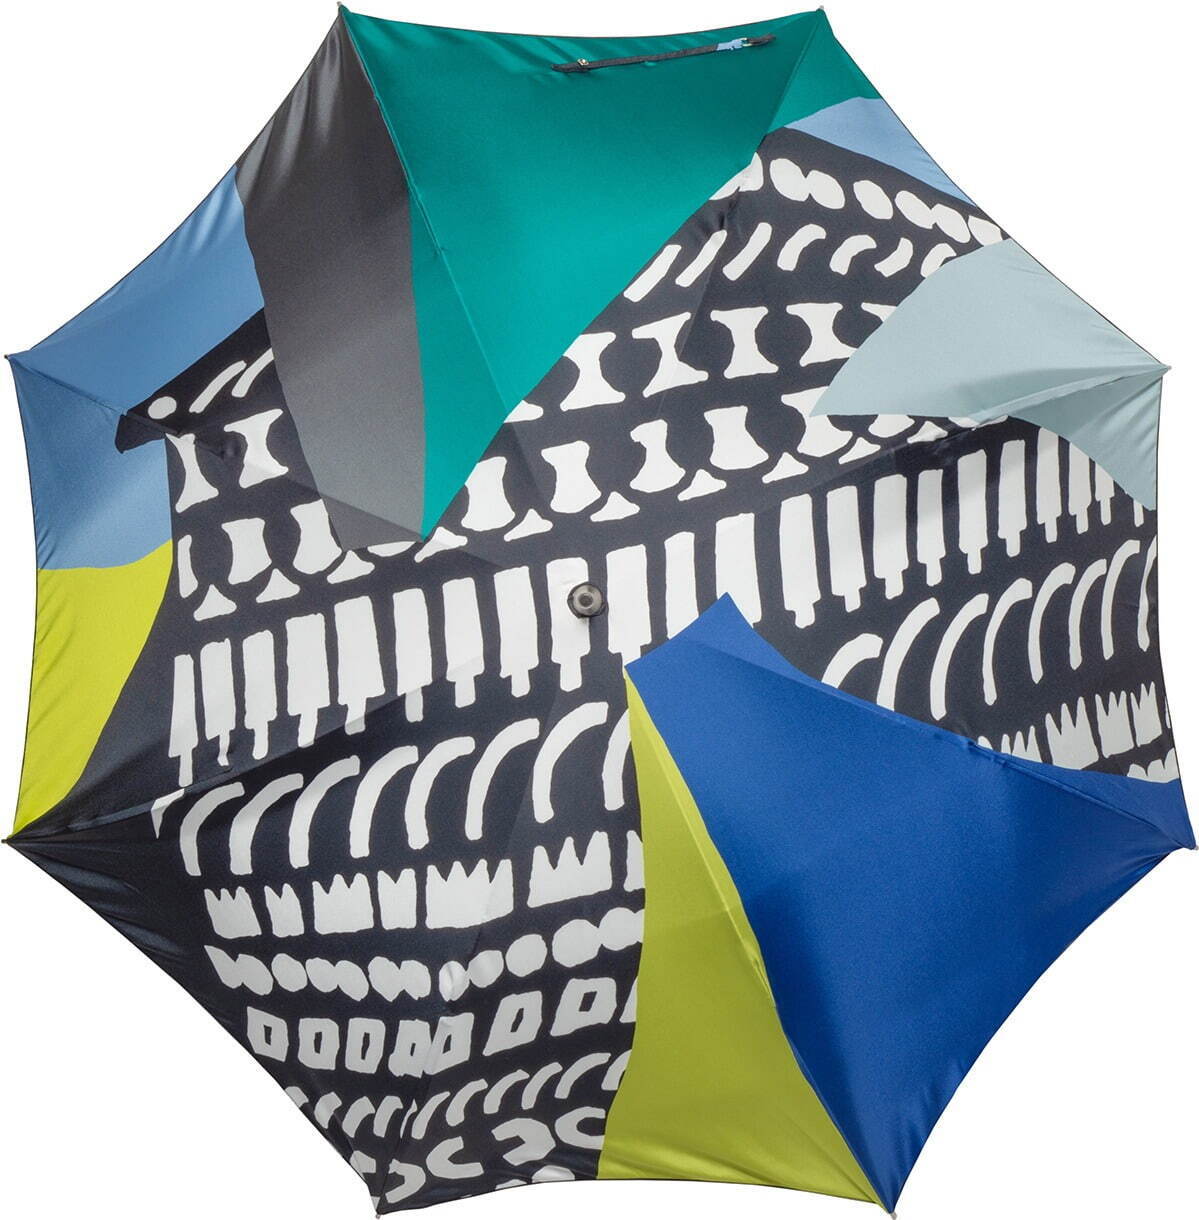 鈴木マサルの期間限定ストアが青山スパイラルに - 新作の傘やバッグ、テキスタイルを展示販売｜写真20